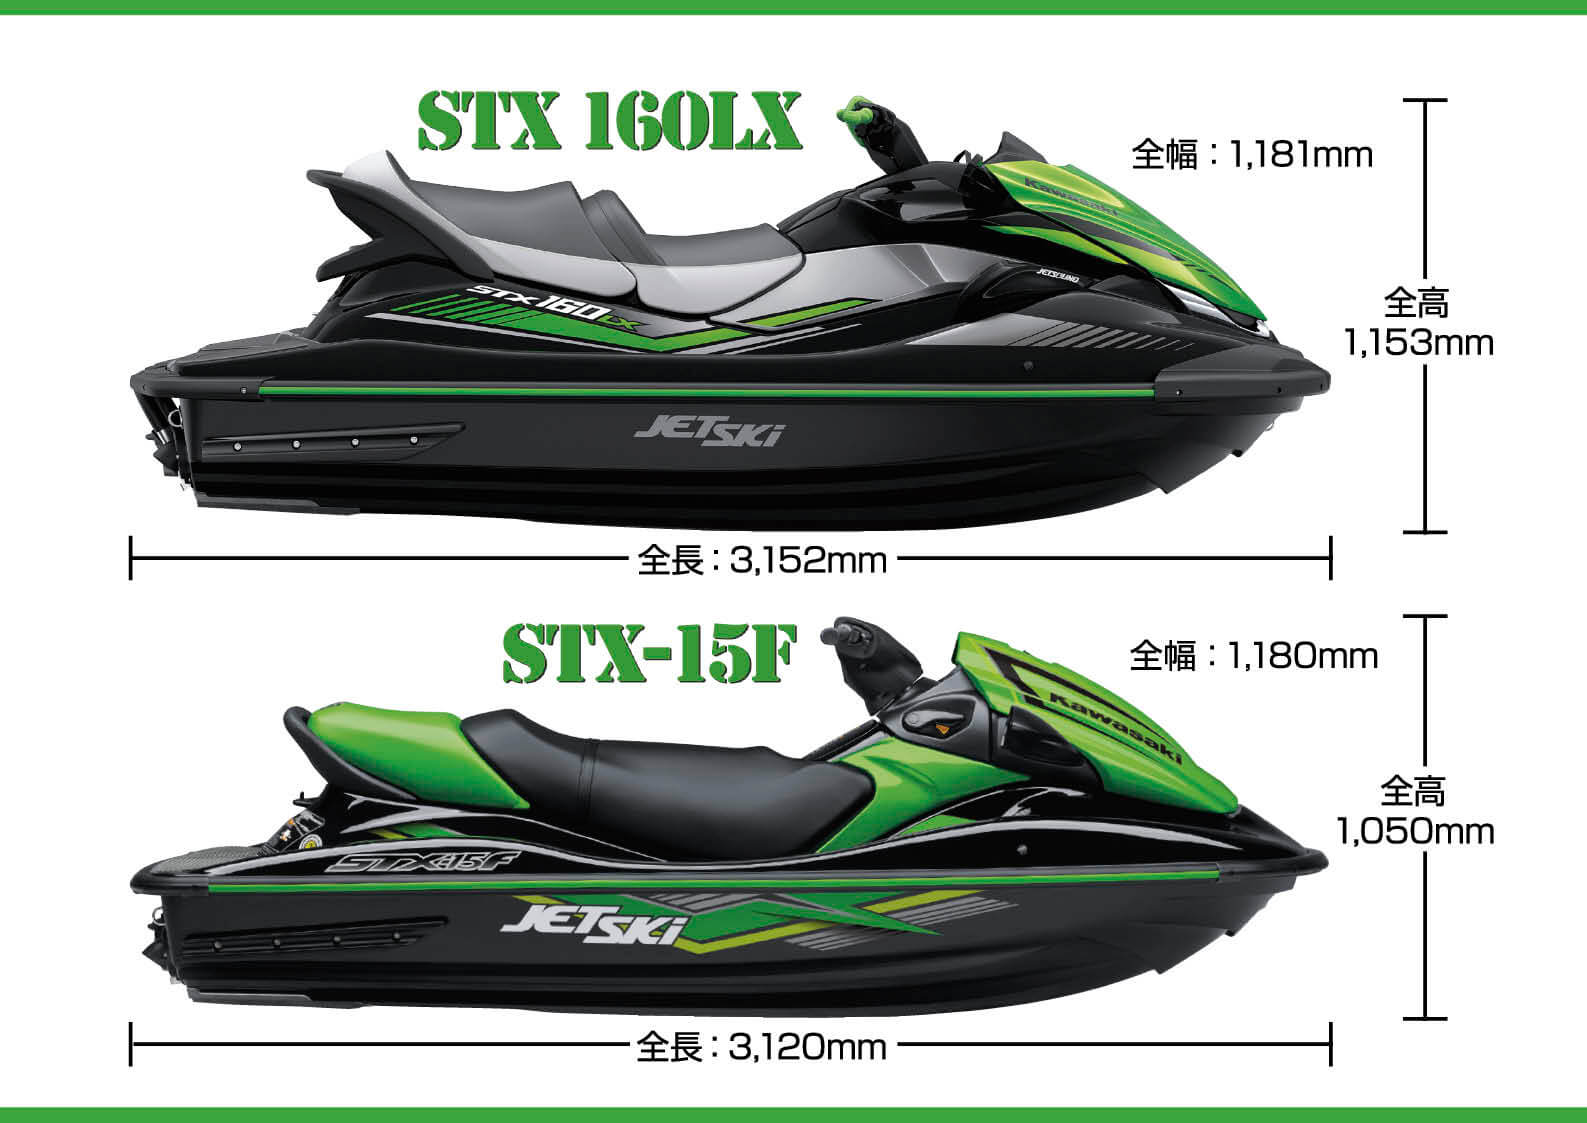 カワサキ「STX 160」 ジェットスキーニューモデル よく分かる「STX 160